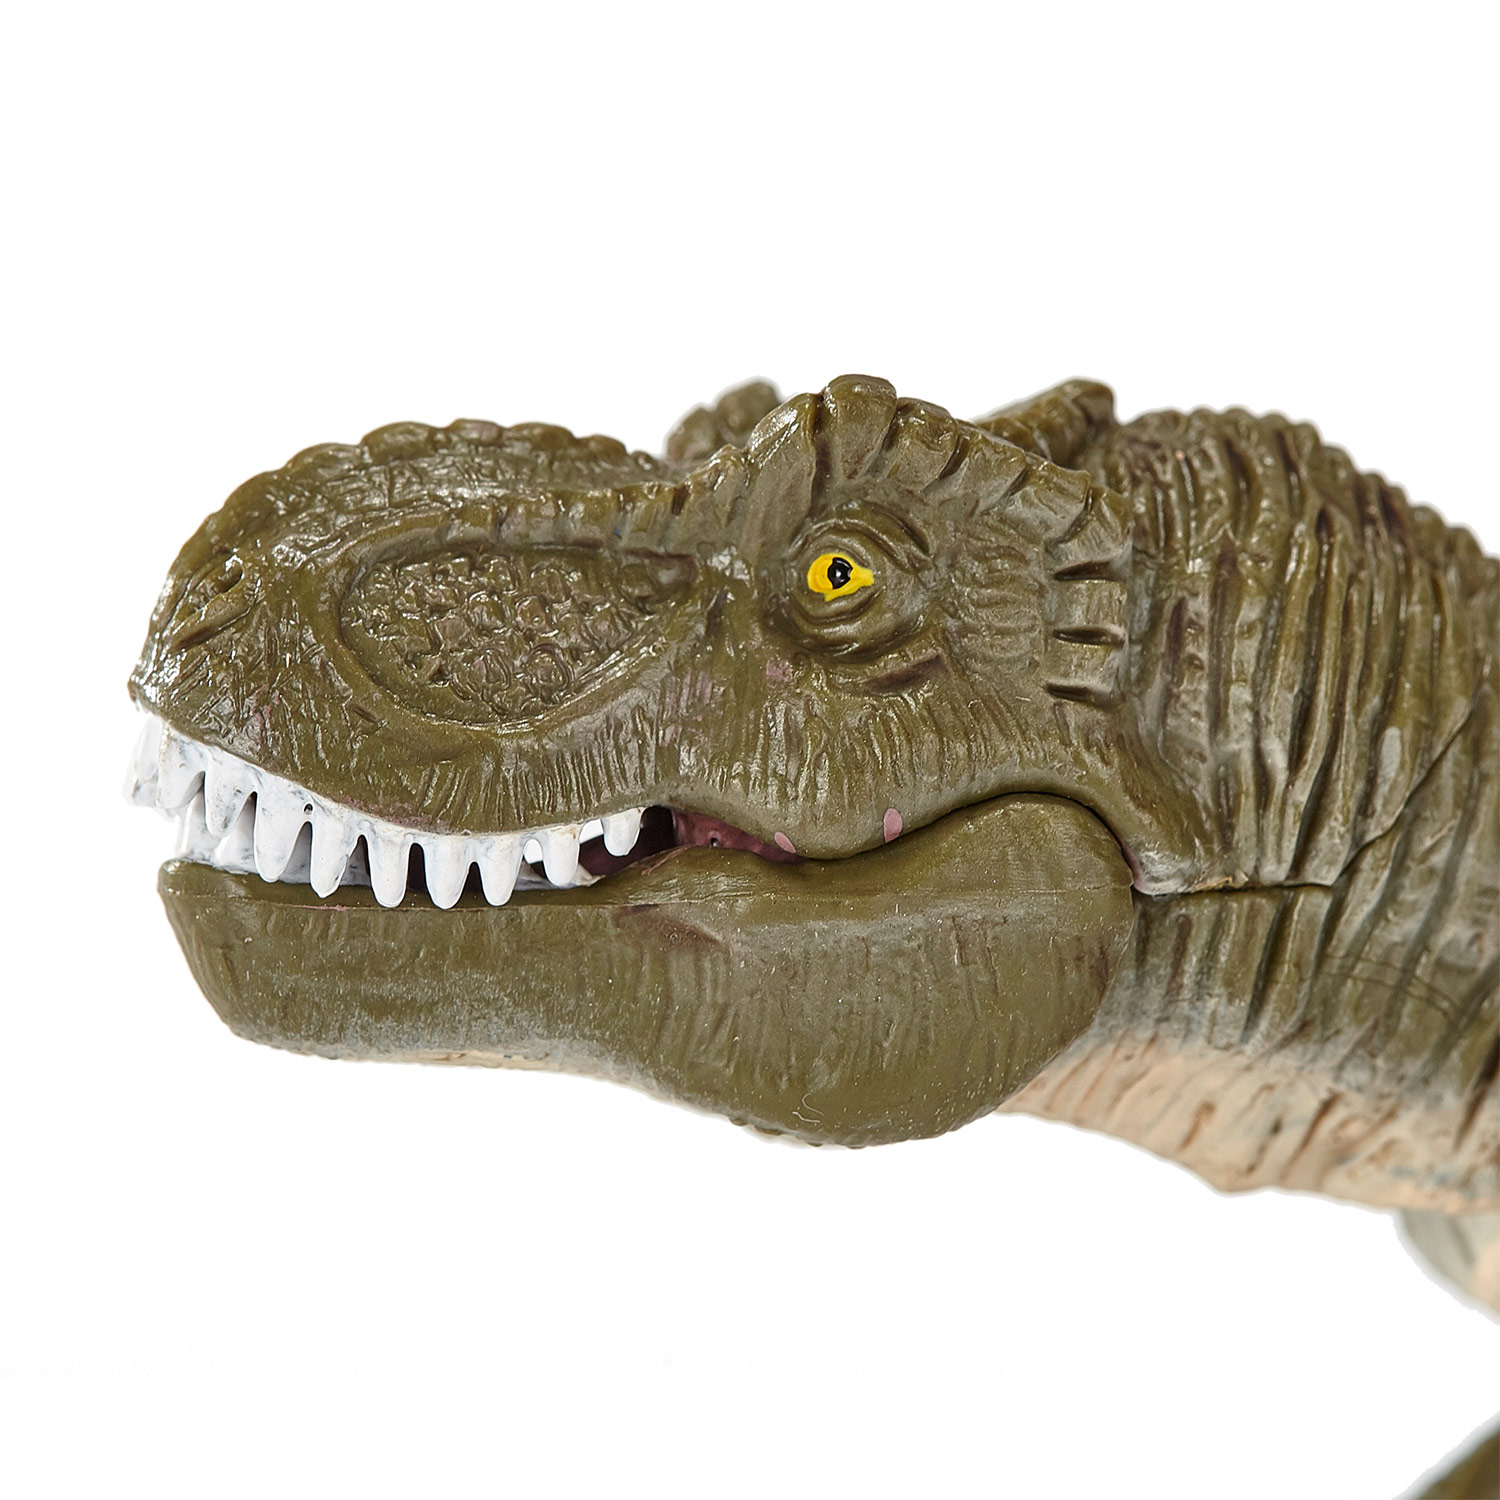 Mojo Prähistorischer T-Rex mit beweglichem Kiefer – 387258